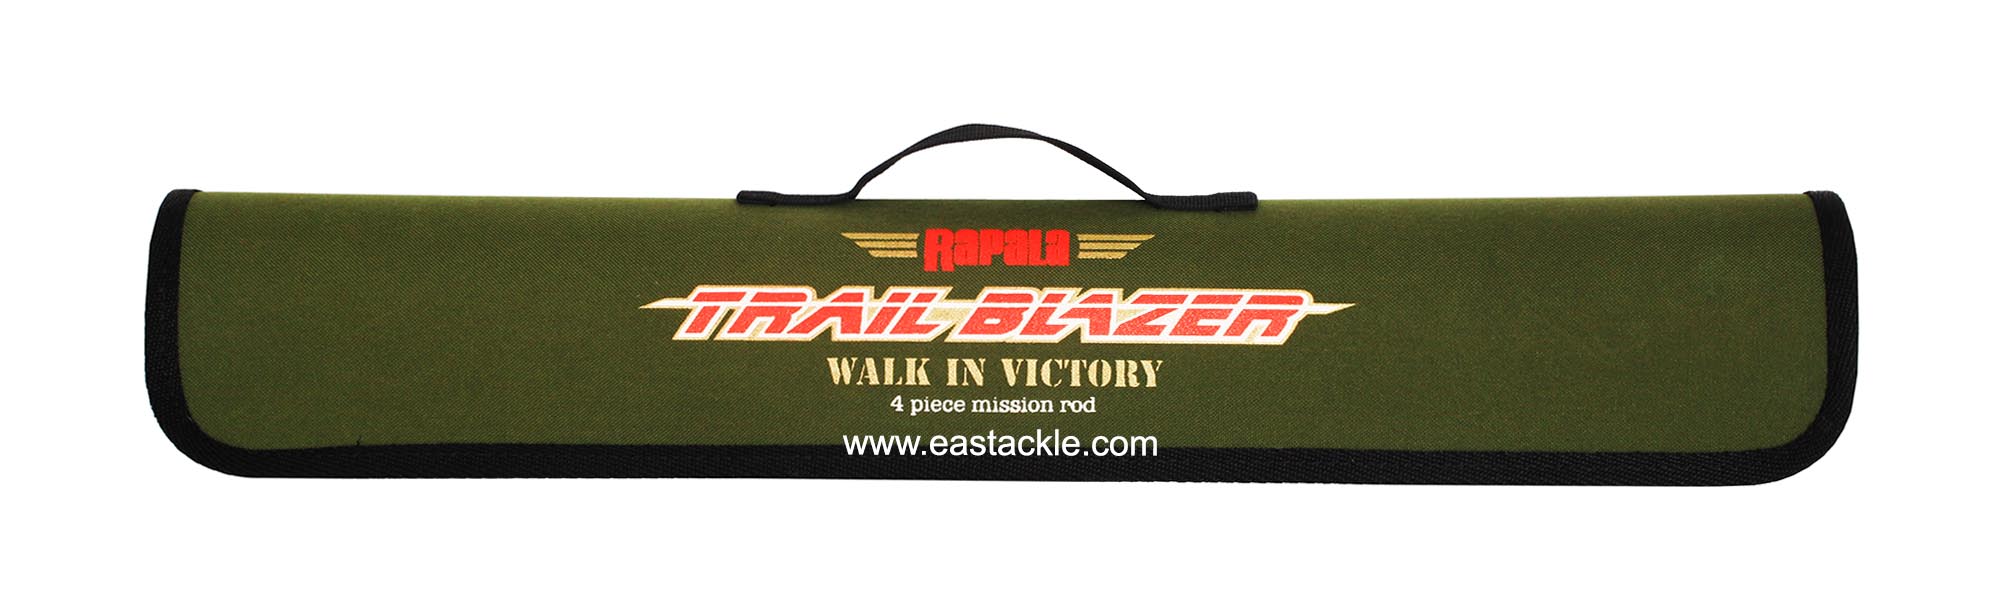 Rapala - Trail Blazer - TRC644MHRF - Baitcasting 4 Piece Travel Rod - Rod Bag